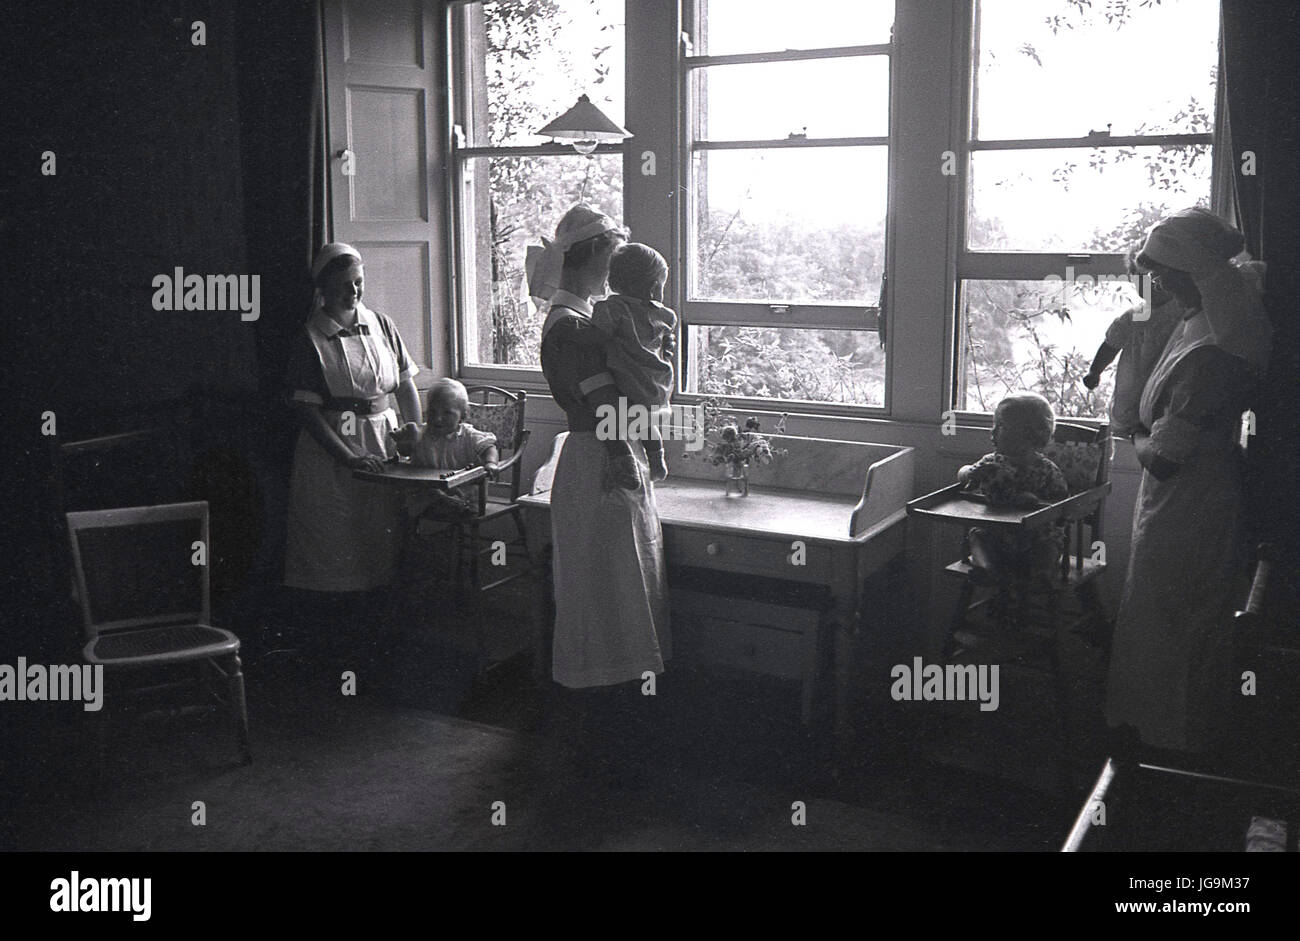 940, en Angleterre, en temps de guerre, les enfants nouvellement evacuateed hancelieretaille au nourrisson d'être soigné à l'hôtel de Stanstead, Essex, demeure de Lady Butler (Sydney Courtauld) épouse de l'homme politique conservateur Rab Butler. Banque D'Images